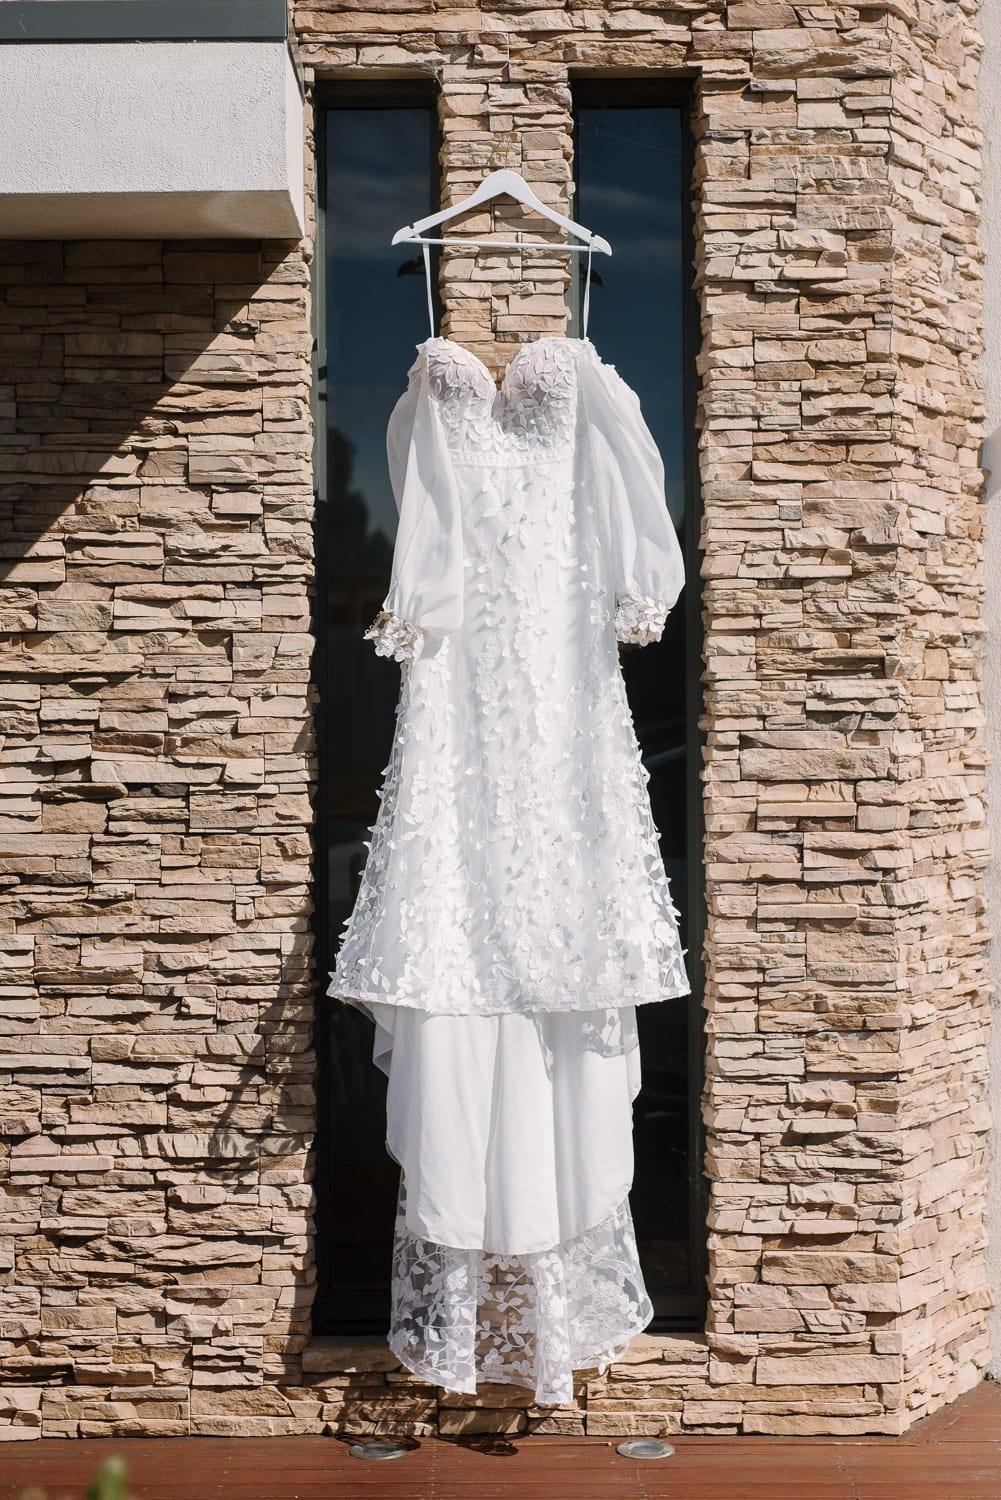 Wedding dress hanging in warrnambool